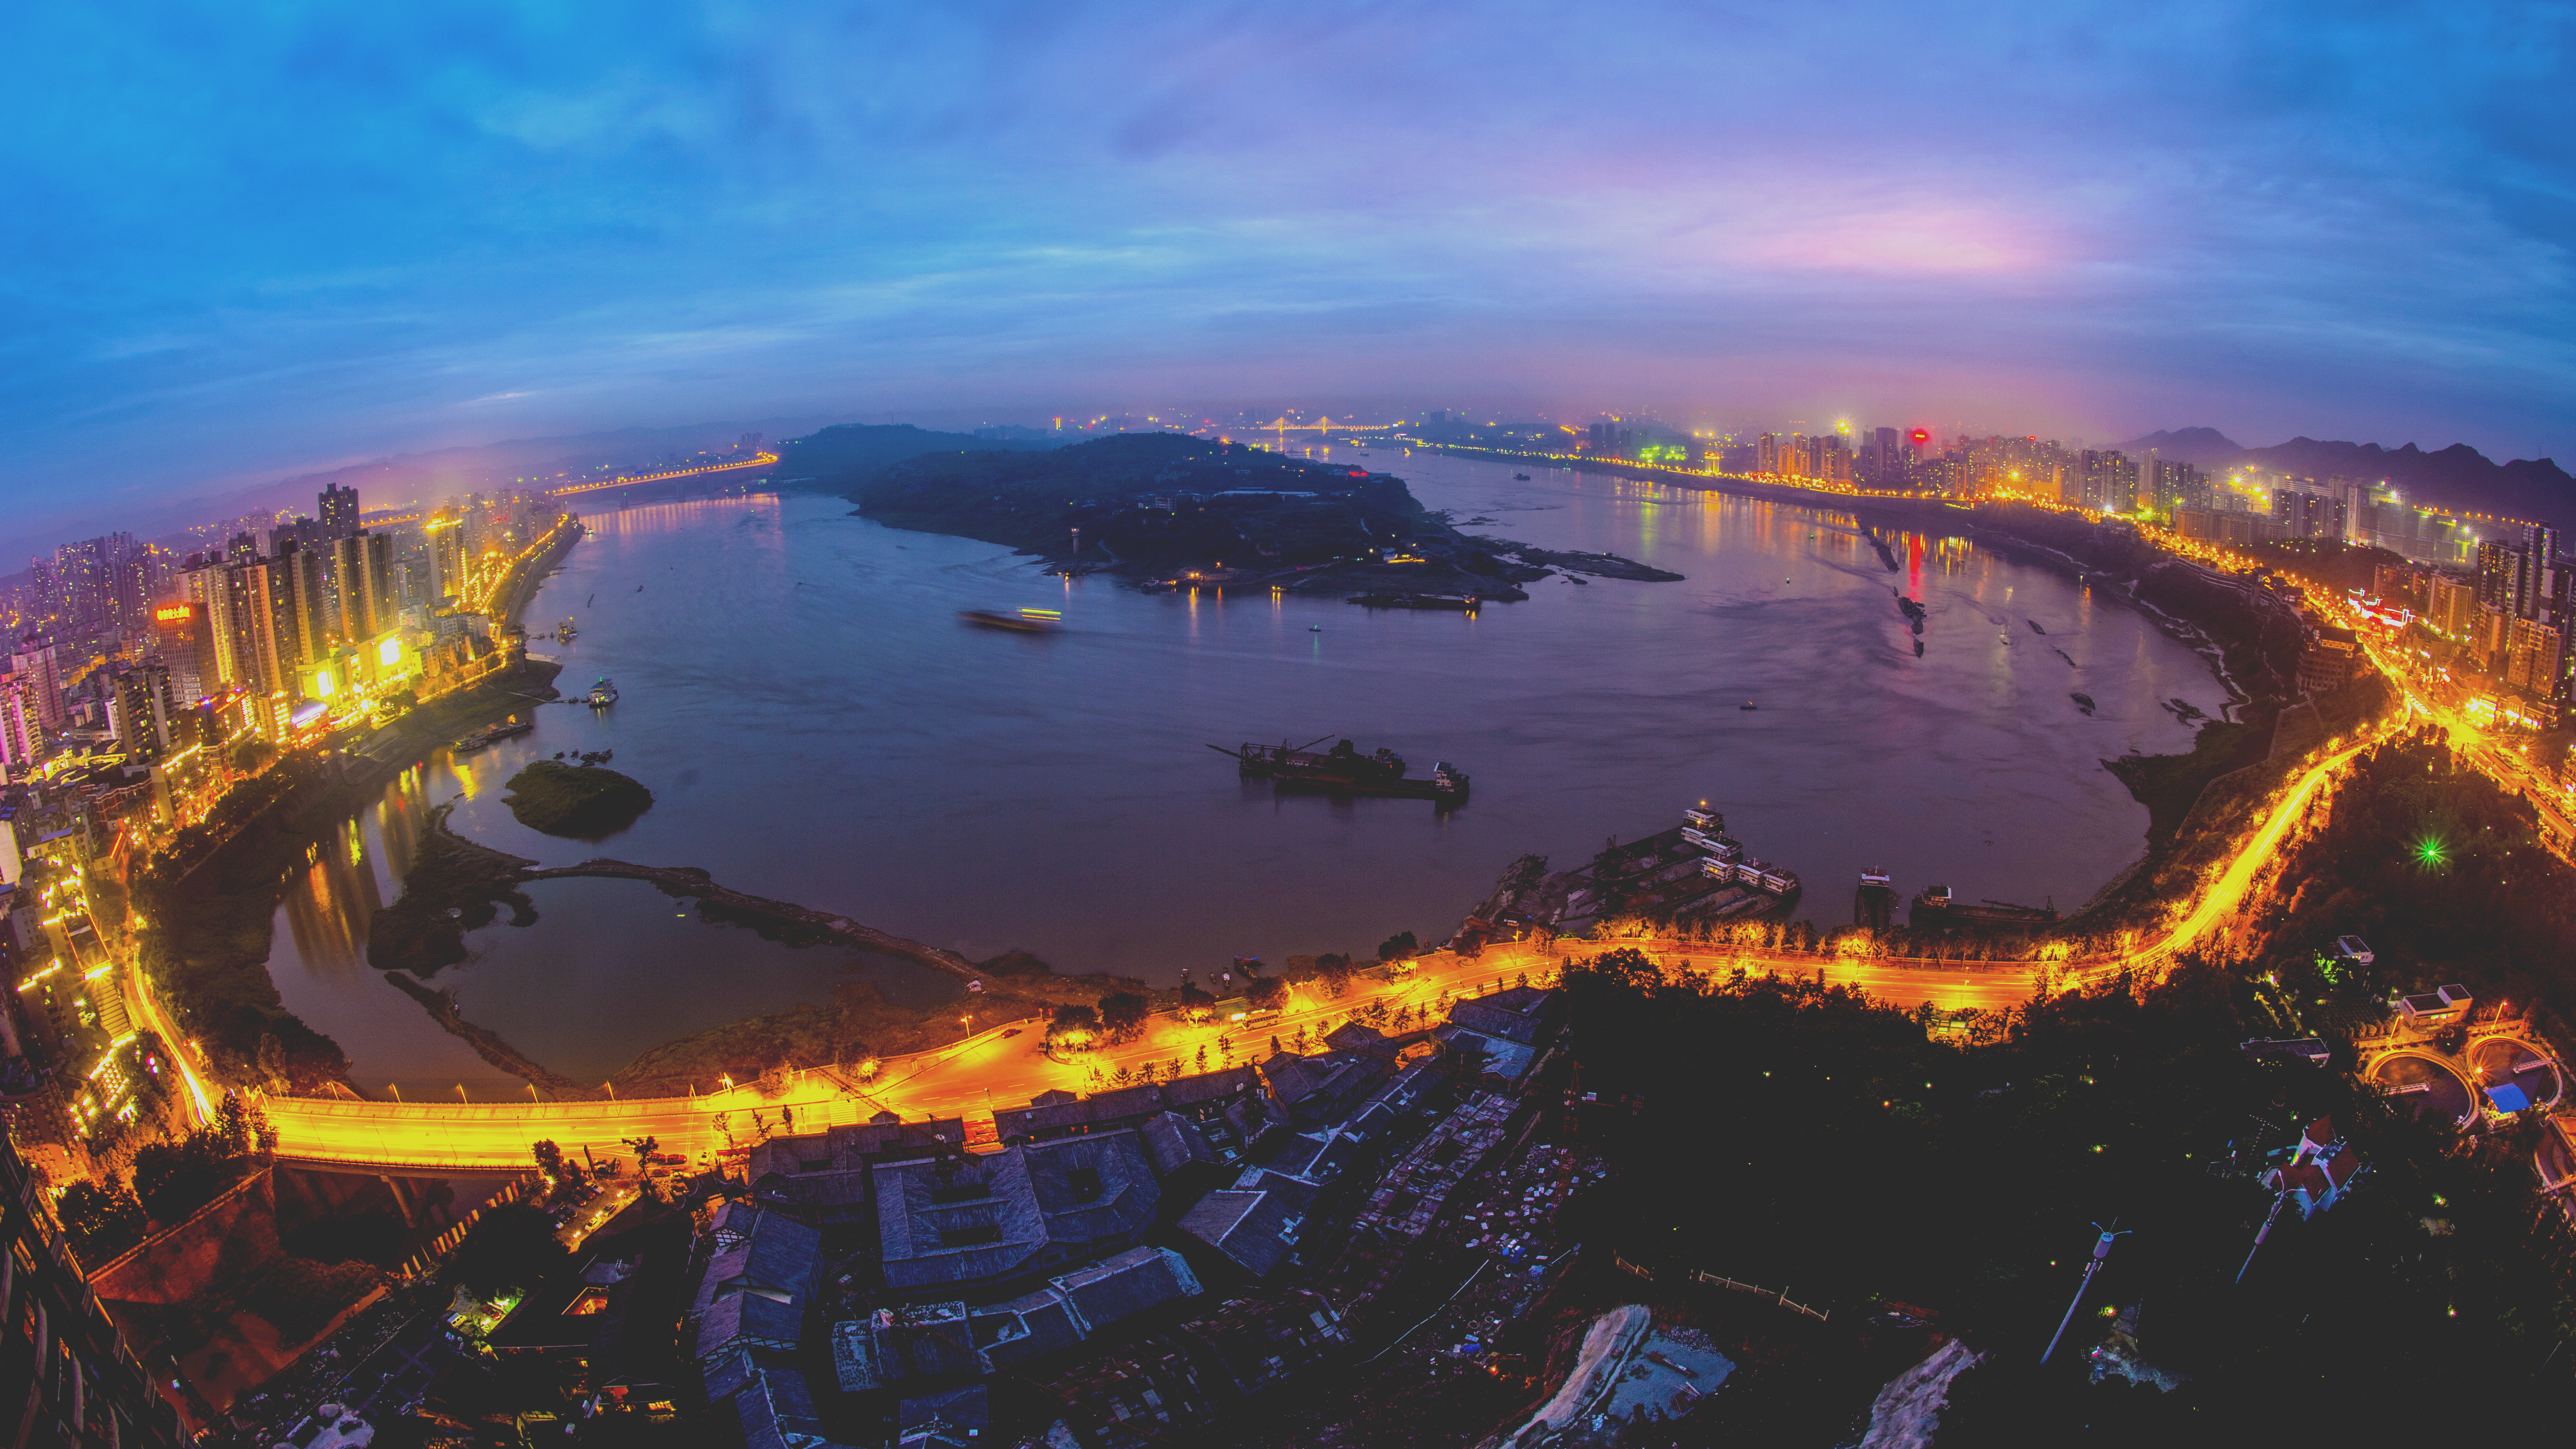 【携程攻略】重庆南滨路景点,重庆南滨路的夜景真是一级棒，眺望长江对面的渝中半岛，高楼和灯光组…